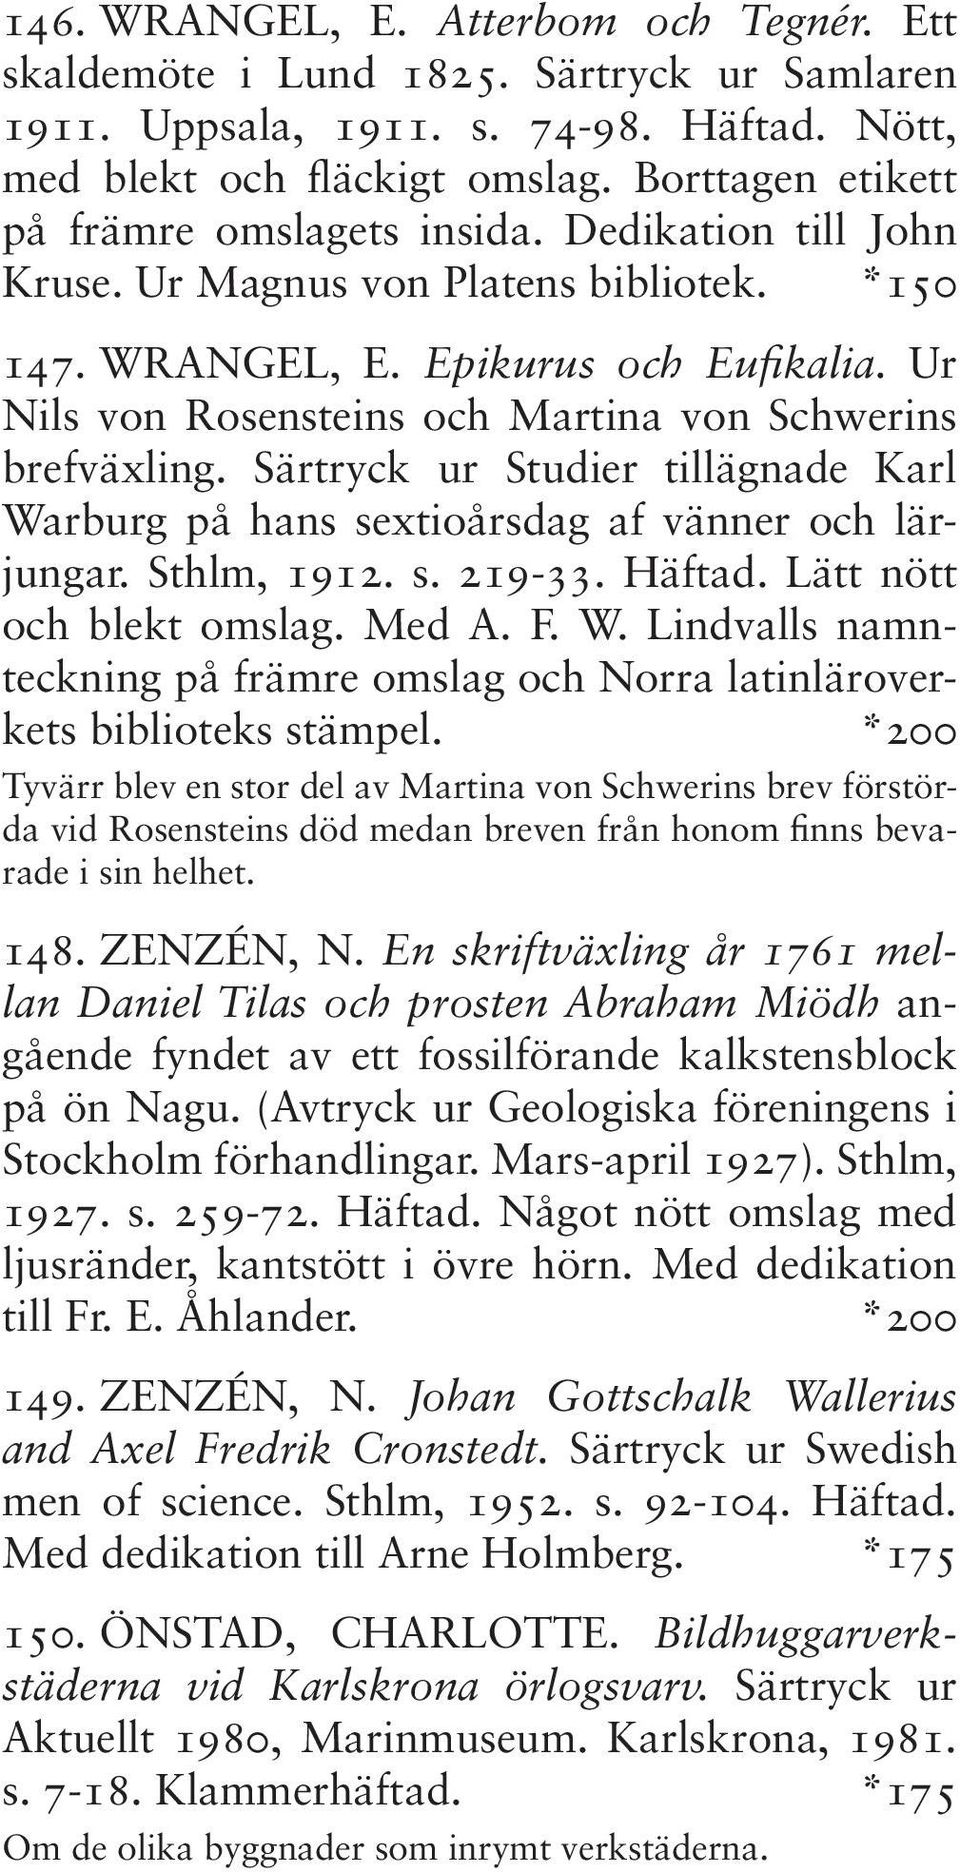 Ur Nils von Rosensteins och Martina von Schwerins brefväxling. Särtryck ur Studier tillägnade Karl Warburg på hans sextioårsdag af vänner och lärjungar. Sthlm, 1912. s. 219-33. Häftad.